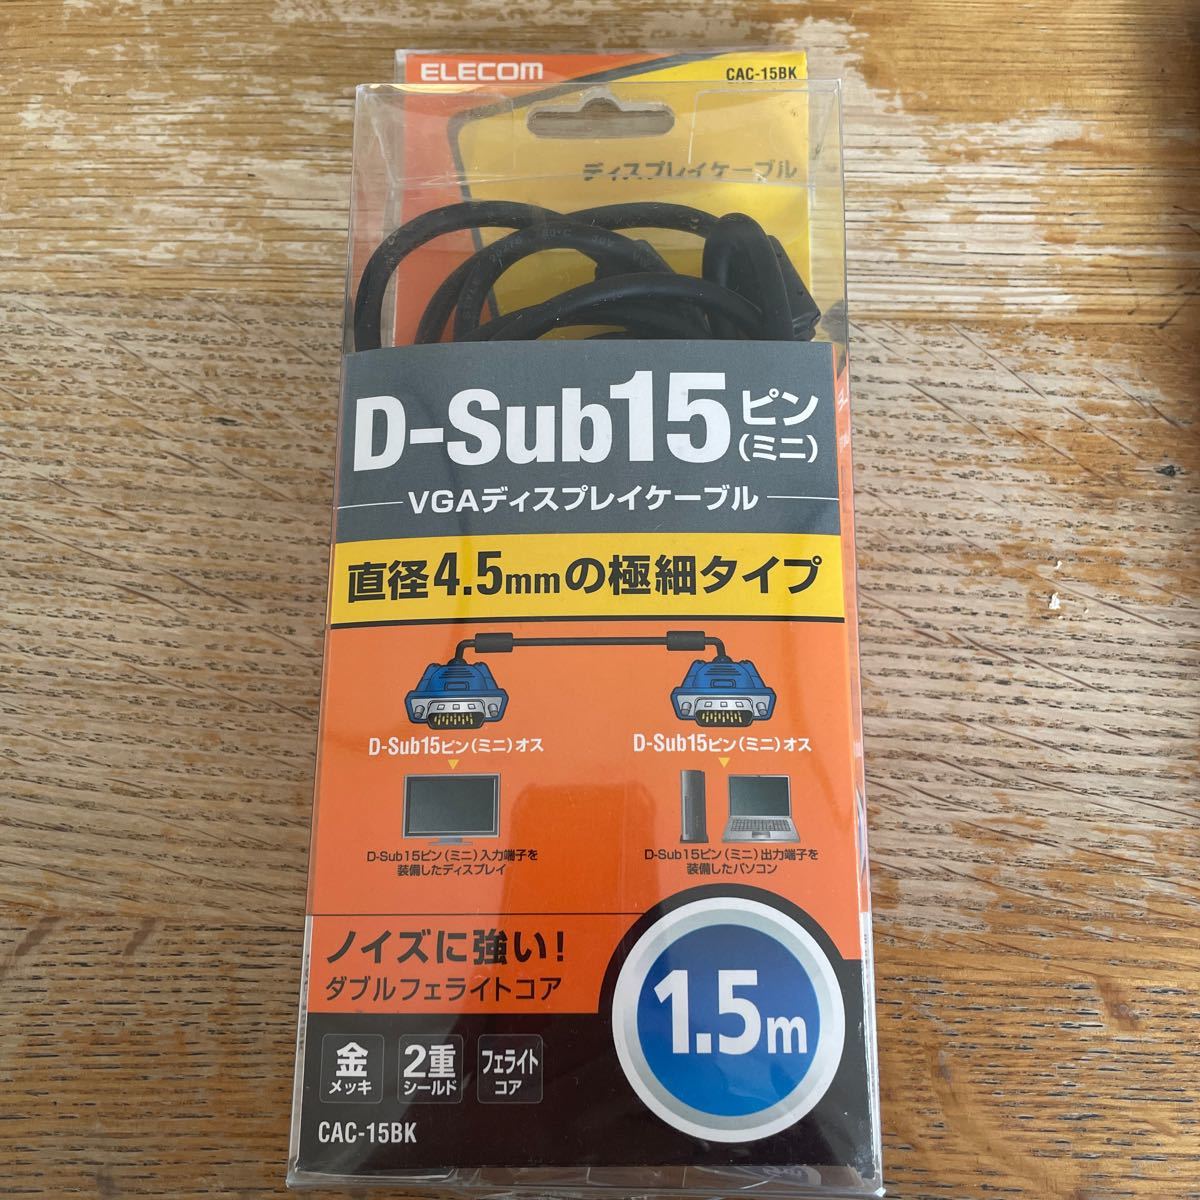 D-sub15 VGAディスプレイケーブル